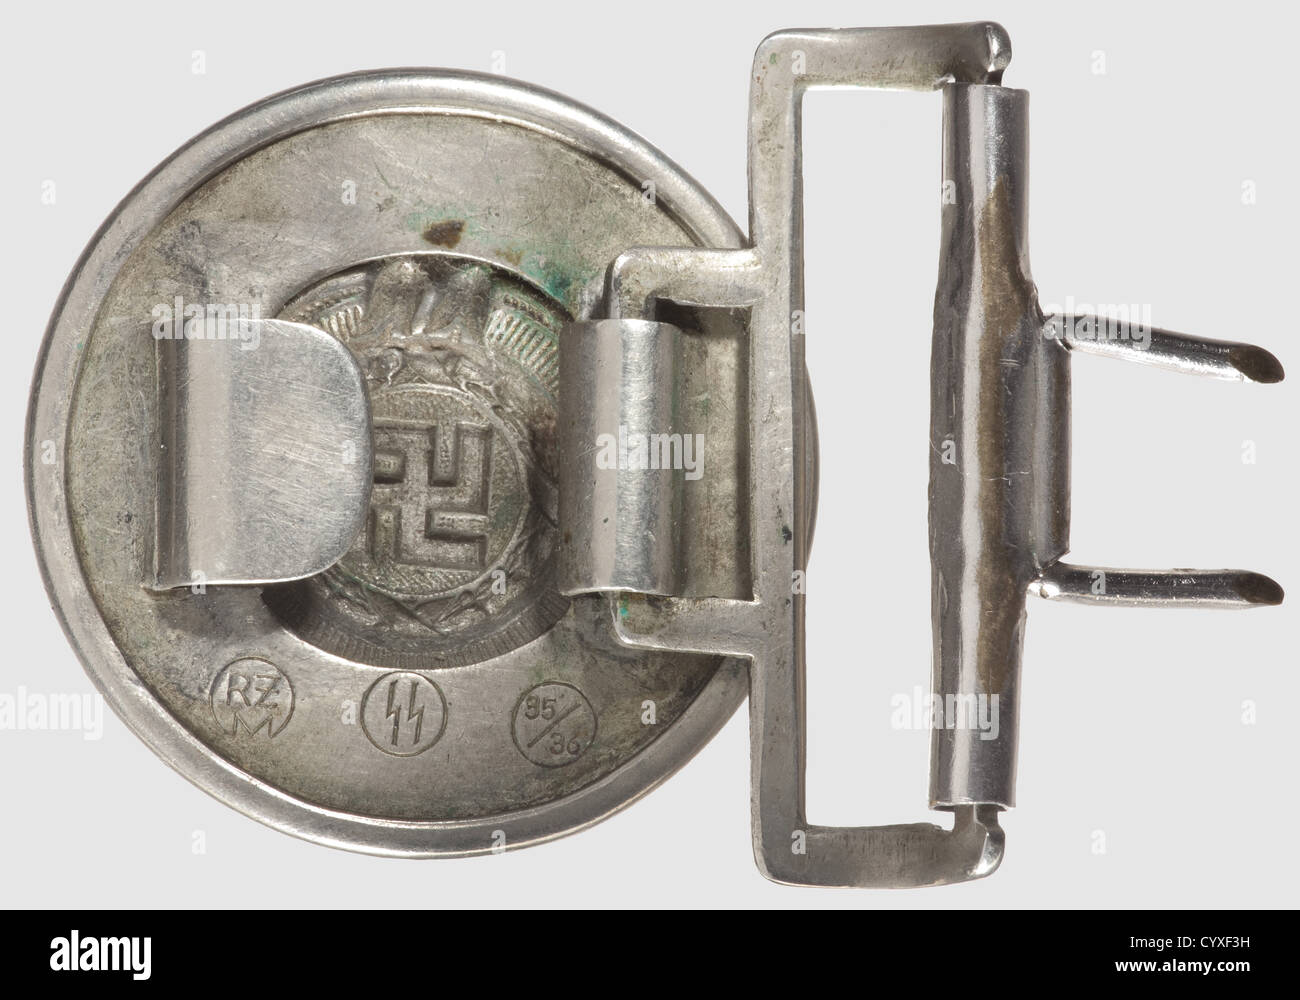 Una fibbia per cintura, per i capi delle fibbie Allgemeine-SS e  SS-Verfügungstruppe Early nichel Silver con stampigliatura inversa "RZM",  "S" e "35/36". Indiscutibilmente originale, realizzato da Overhoff nel  1935. Fibbie cintura in